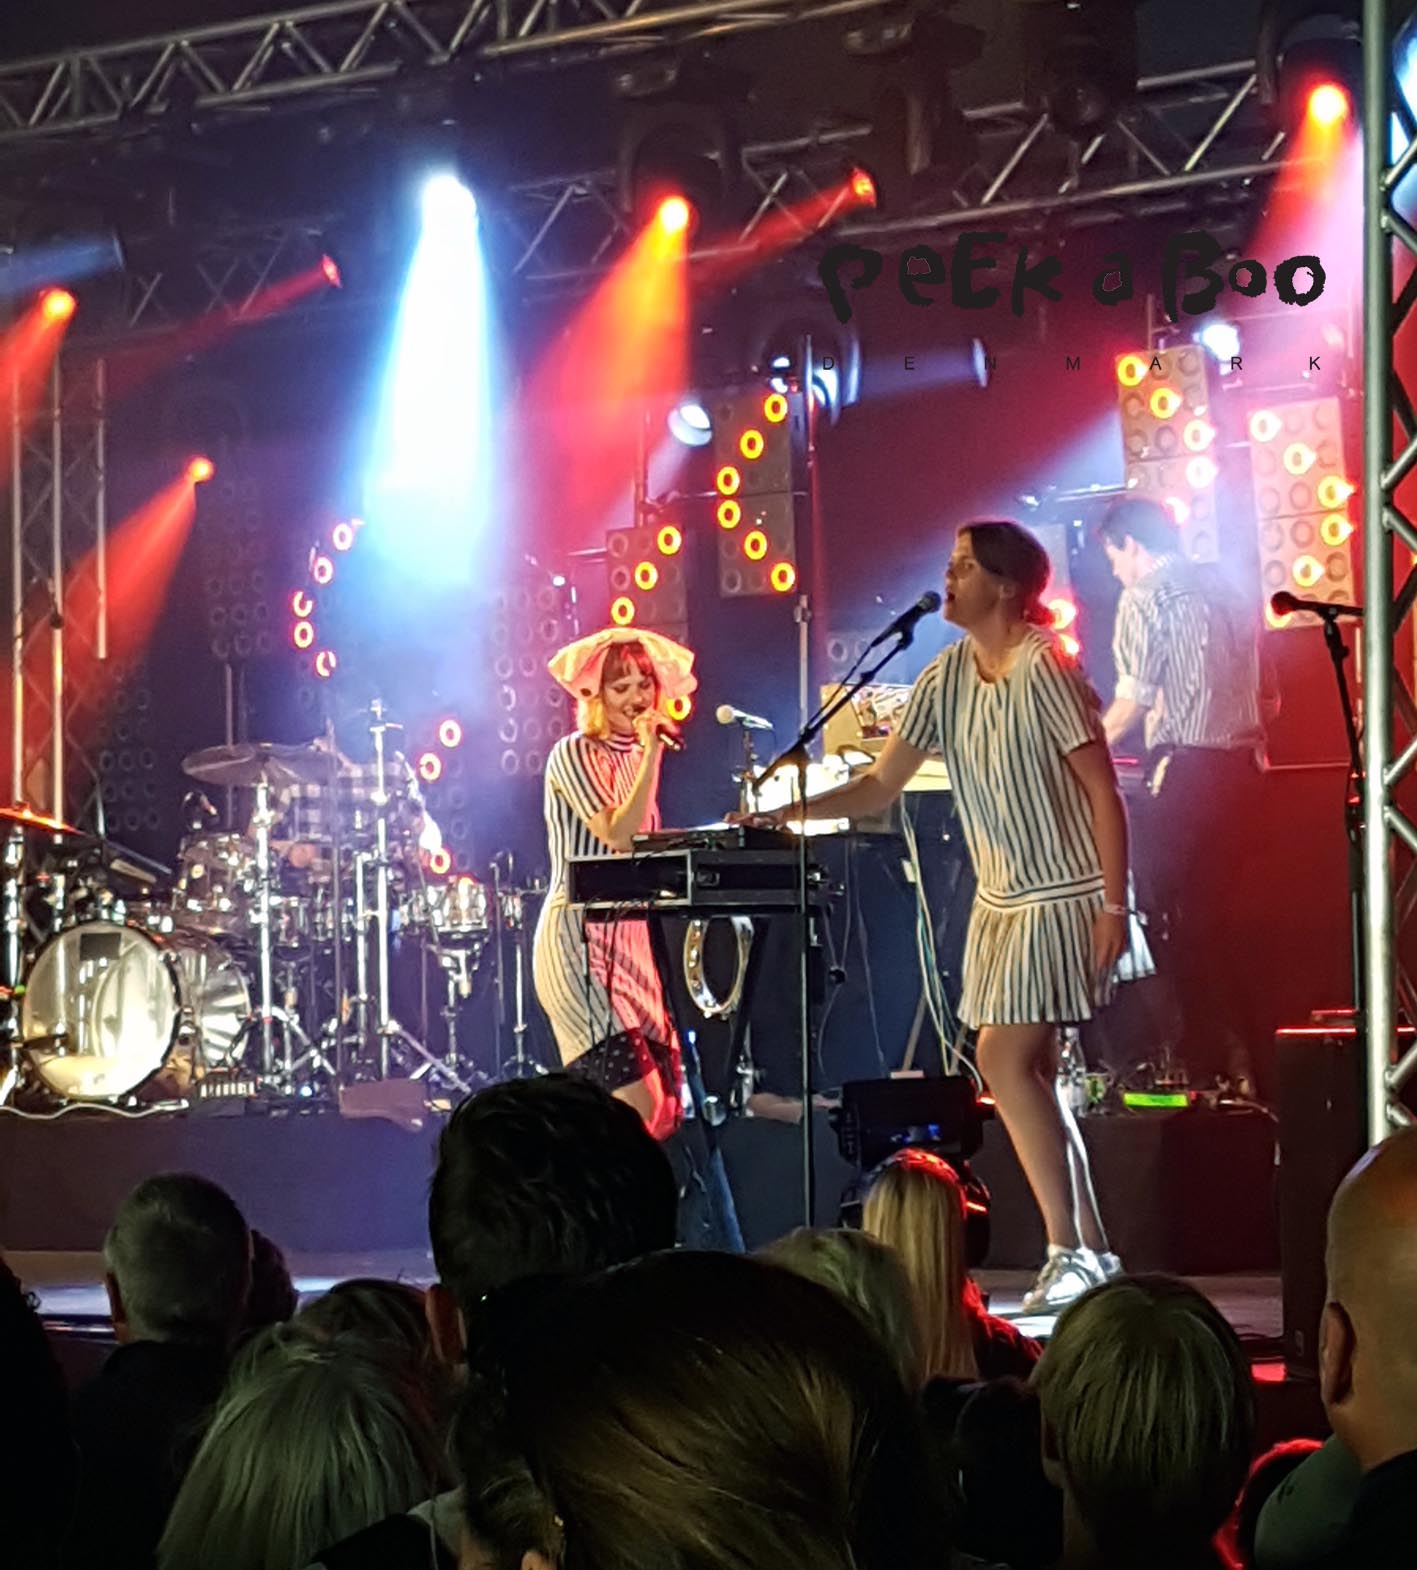 The Danish female singer Oh Land at Vig Festvalen 2016.